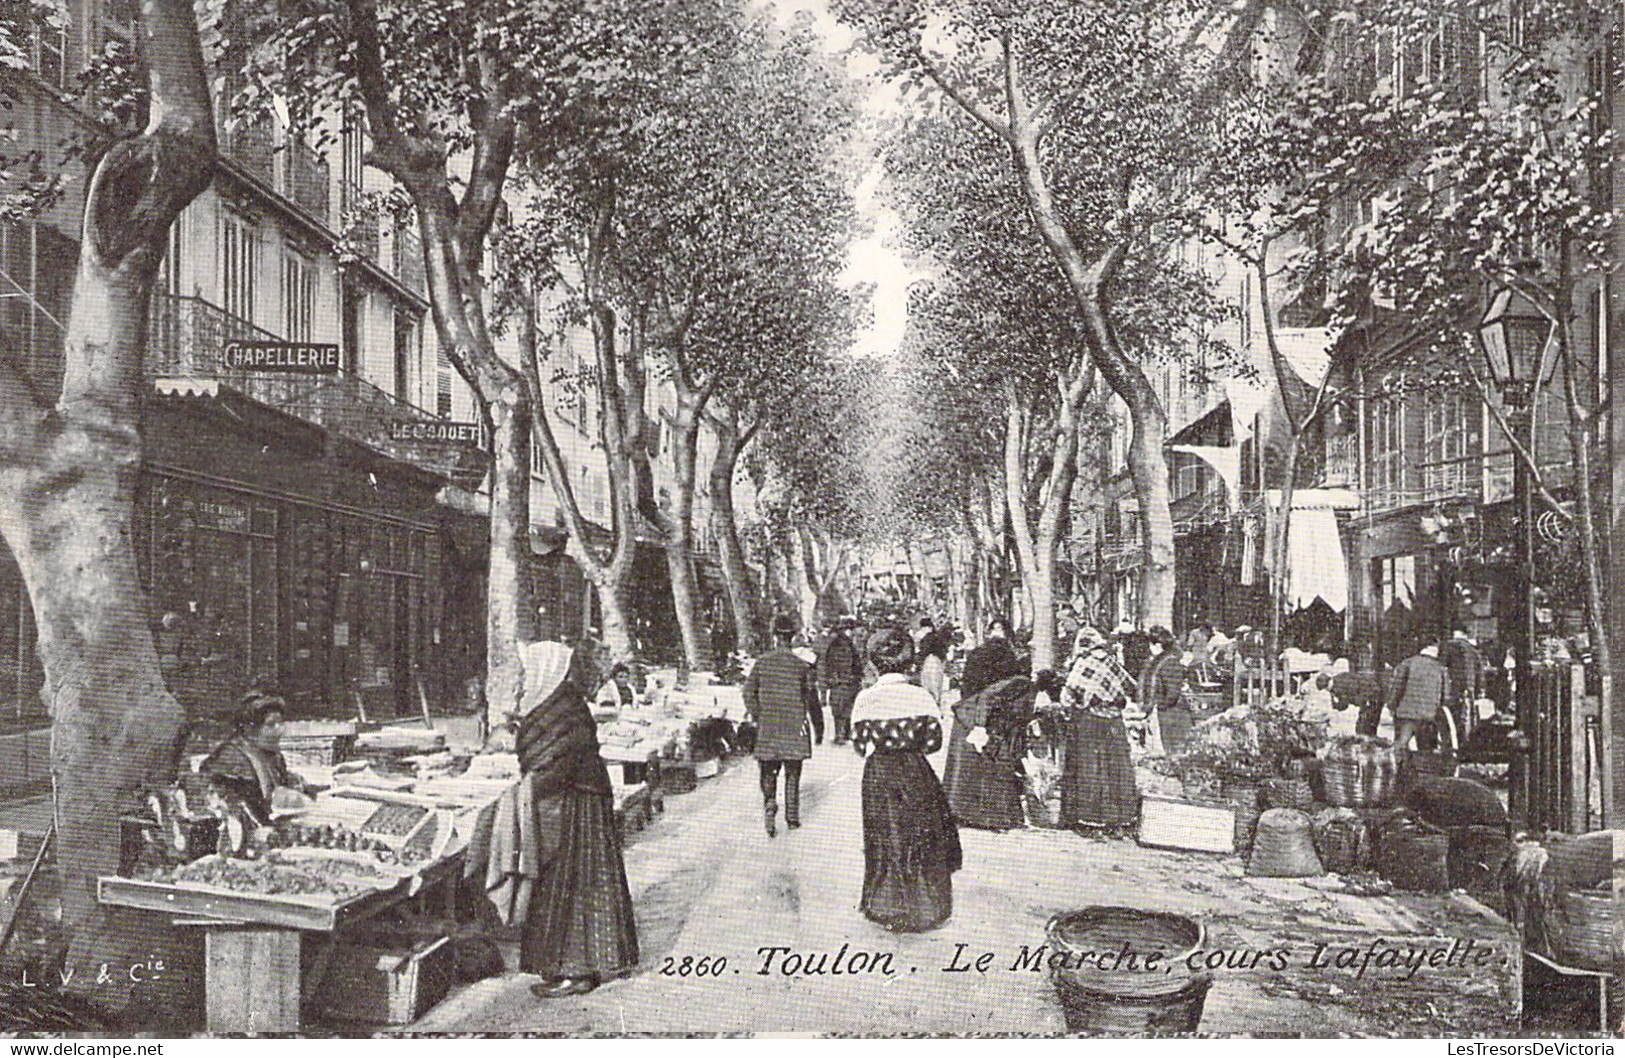 MARCHES - TOULON - Le Marché - Cours Lafayette - Carte Postale Ancienne - Märkte